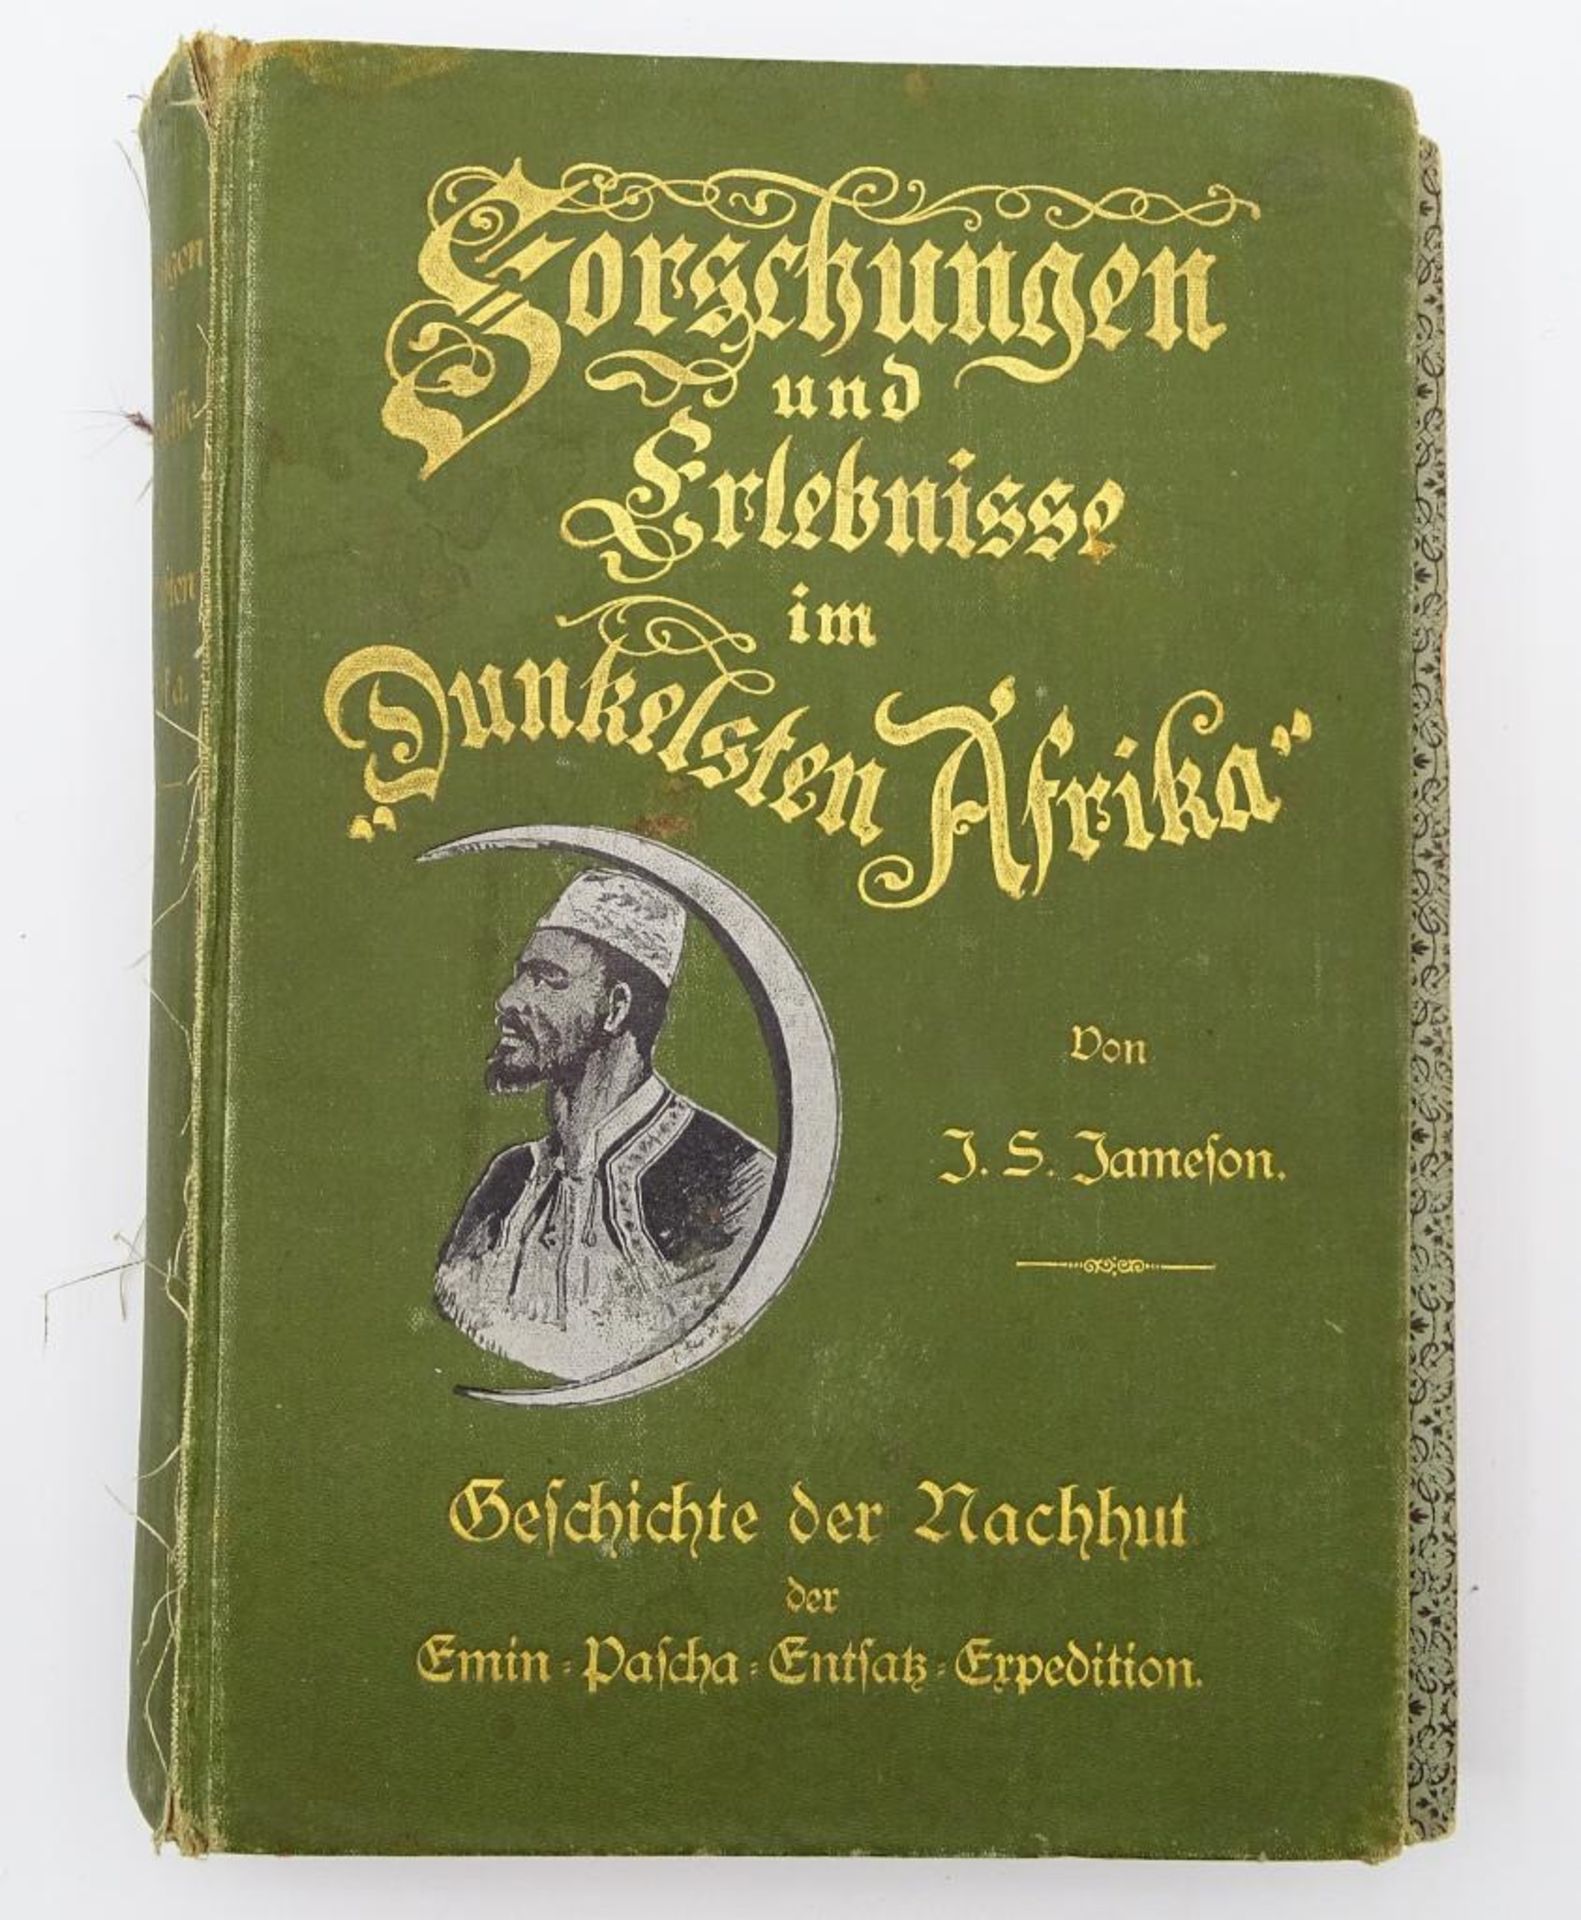 Forschungen und Erlebnisse im dunkelsten Afrika von J.S. Jameson,Hamburg 1891, mit einer Karte und